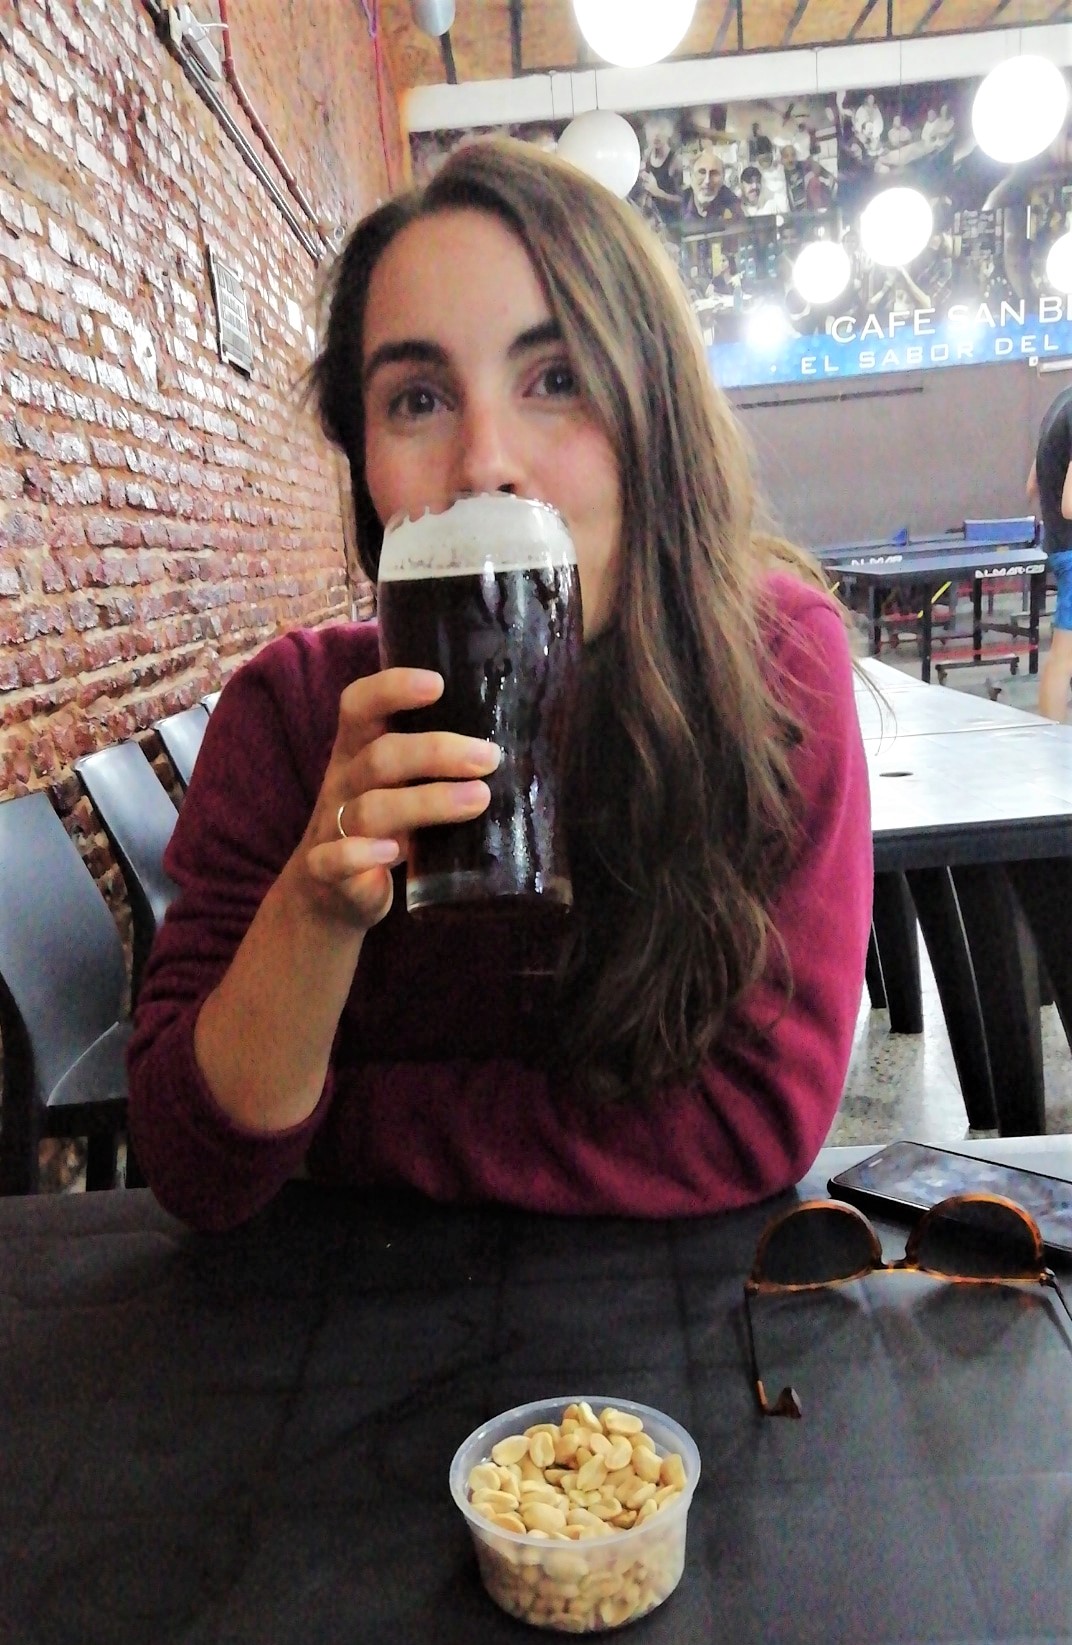 Drinking a Beer at Cafe San Bernardo